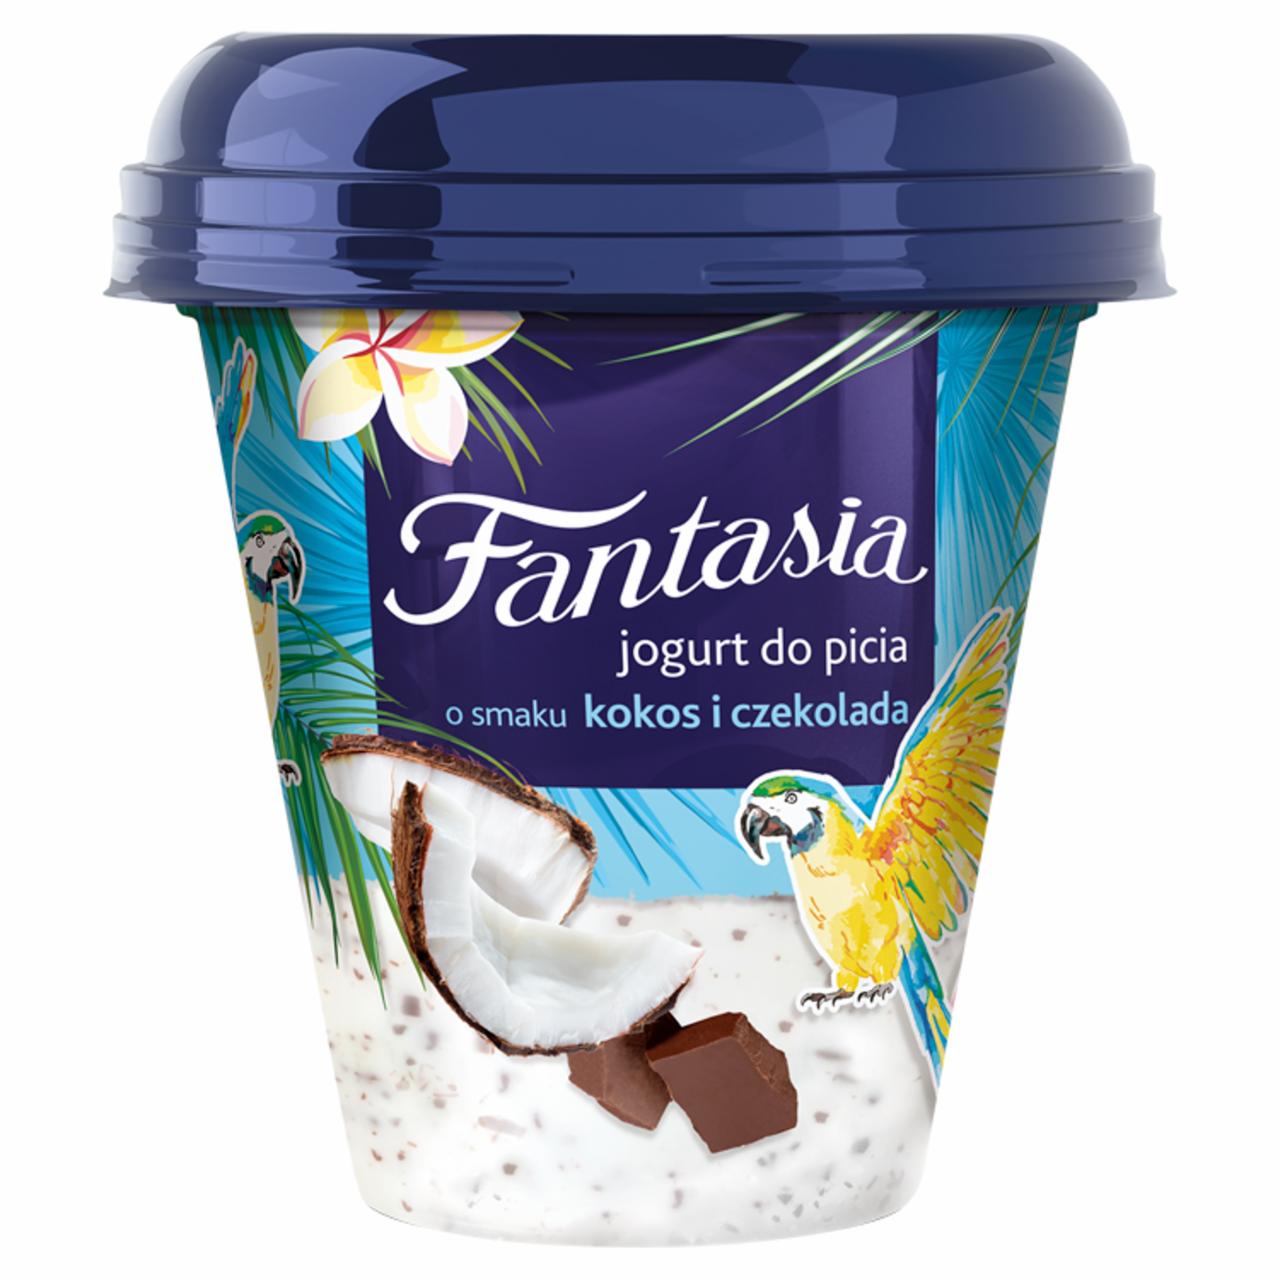 Zdjęcia - Danone Fantasia Jogurt do picia o smaku kokos i czekolada 240 g